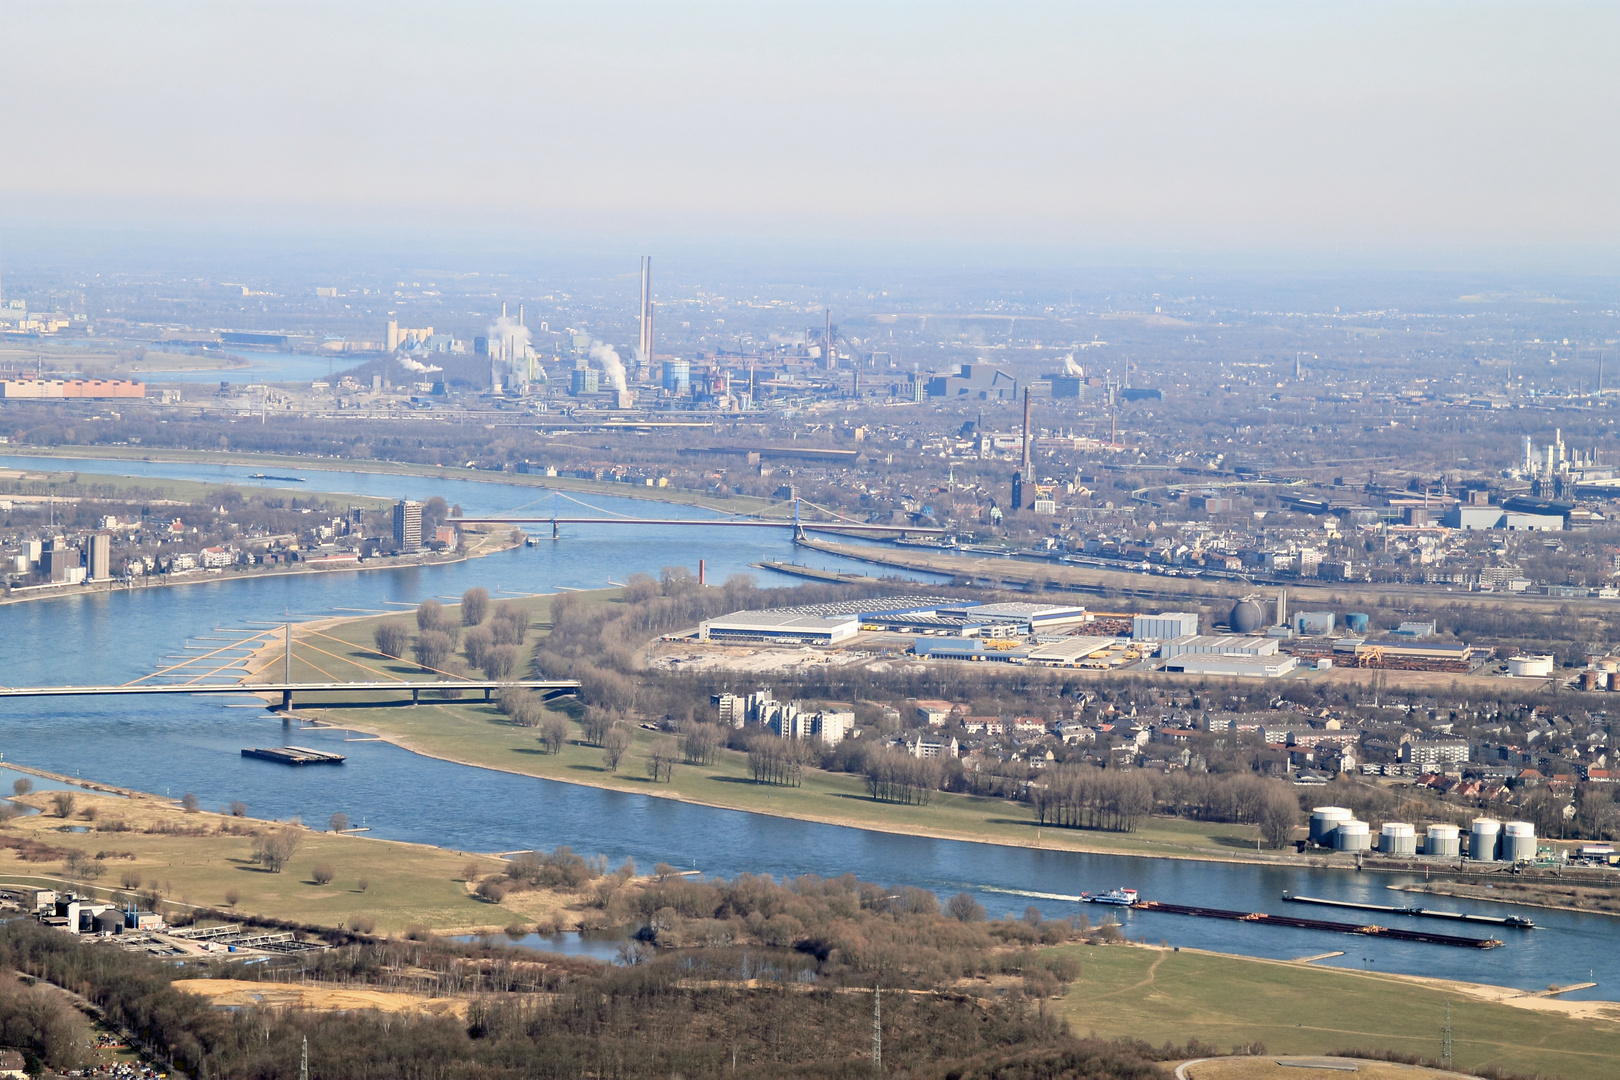 Rhein, Duisburg und Krupp aus der Luft gesehen